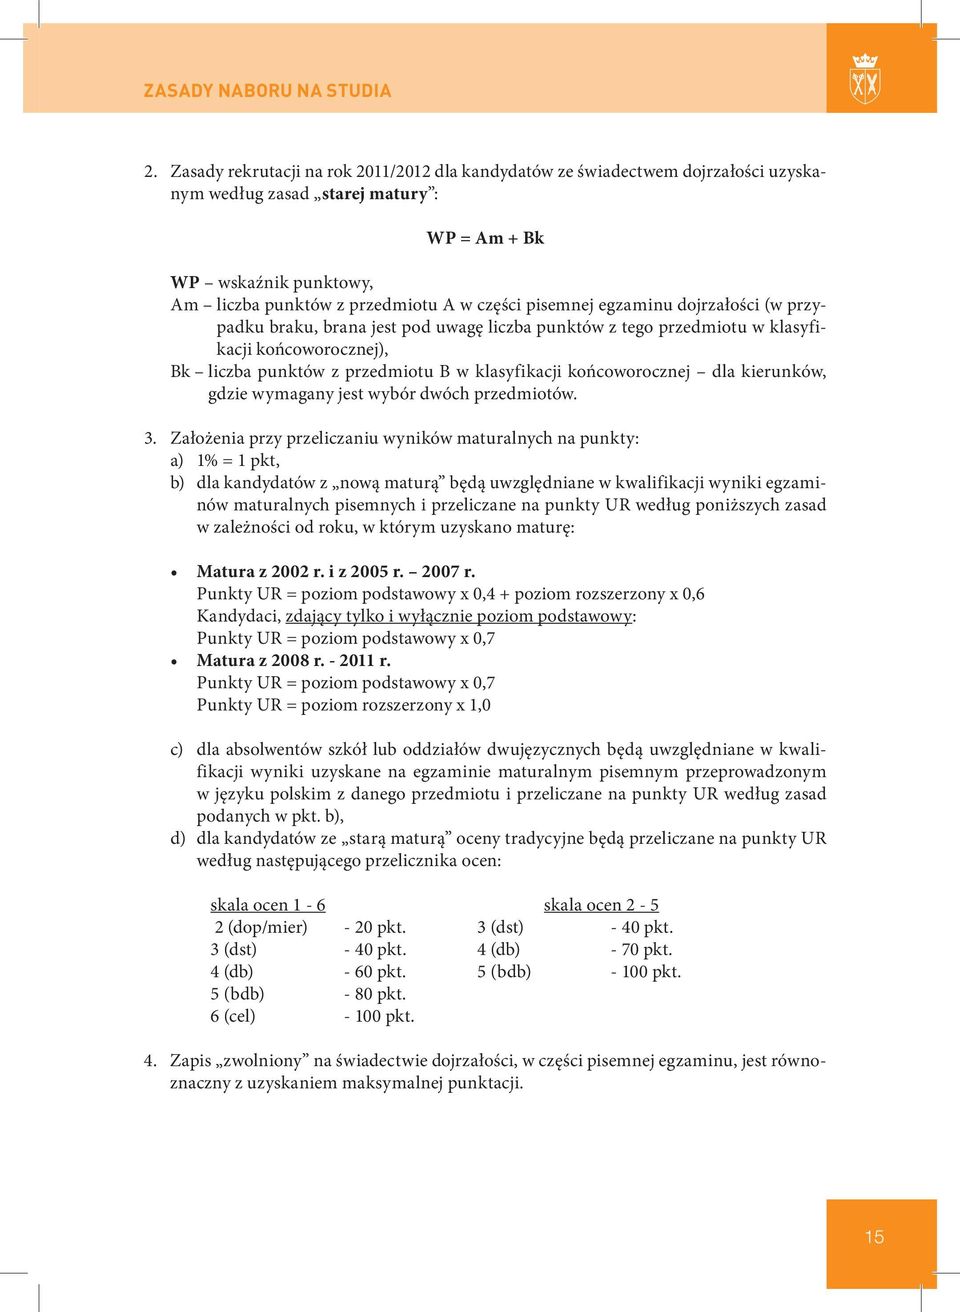 pisemnej egzaminu dojrzałości (w przypadku braku, brana jest pod uwagę liczba punktów z tego przedmiotu w klasyfikacji końcoworocznej), Bk liczba punktów z przedmiotu B w klasyfikacji końcoworocznej